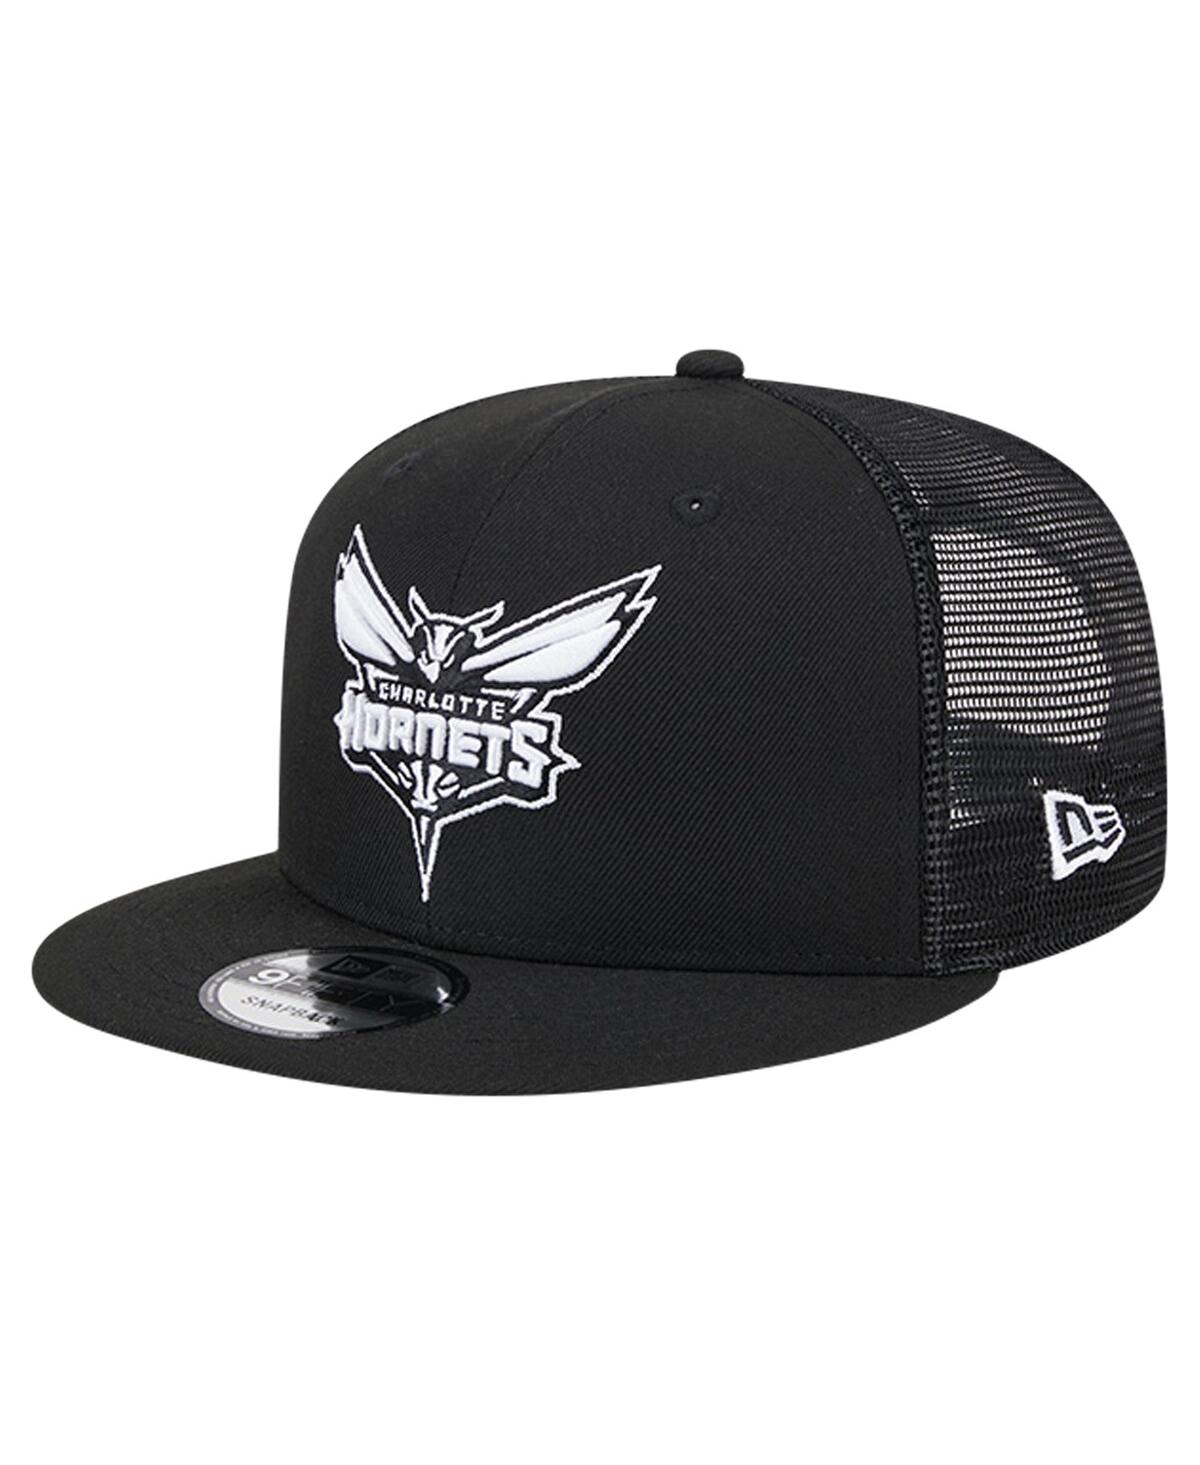 Men's Black Charlotte Hornets Evergreen 9FIFTY Trucker Snapback Hat - Black